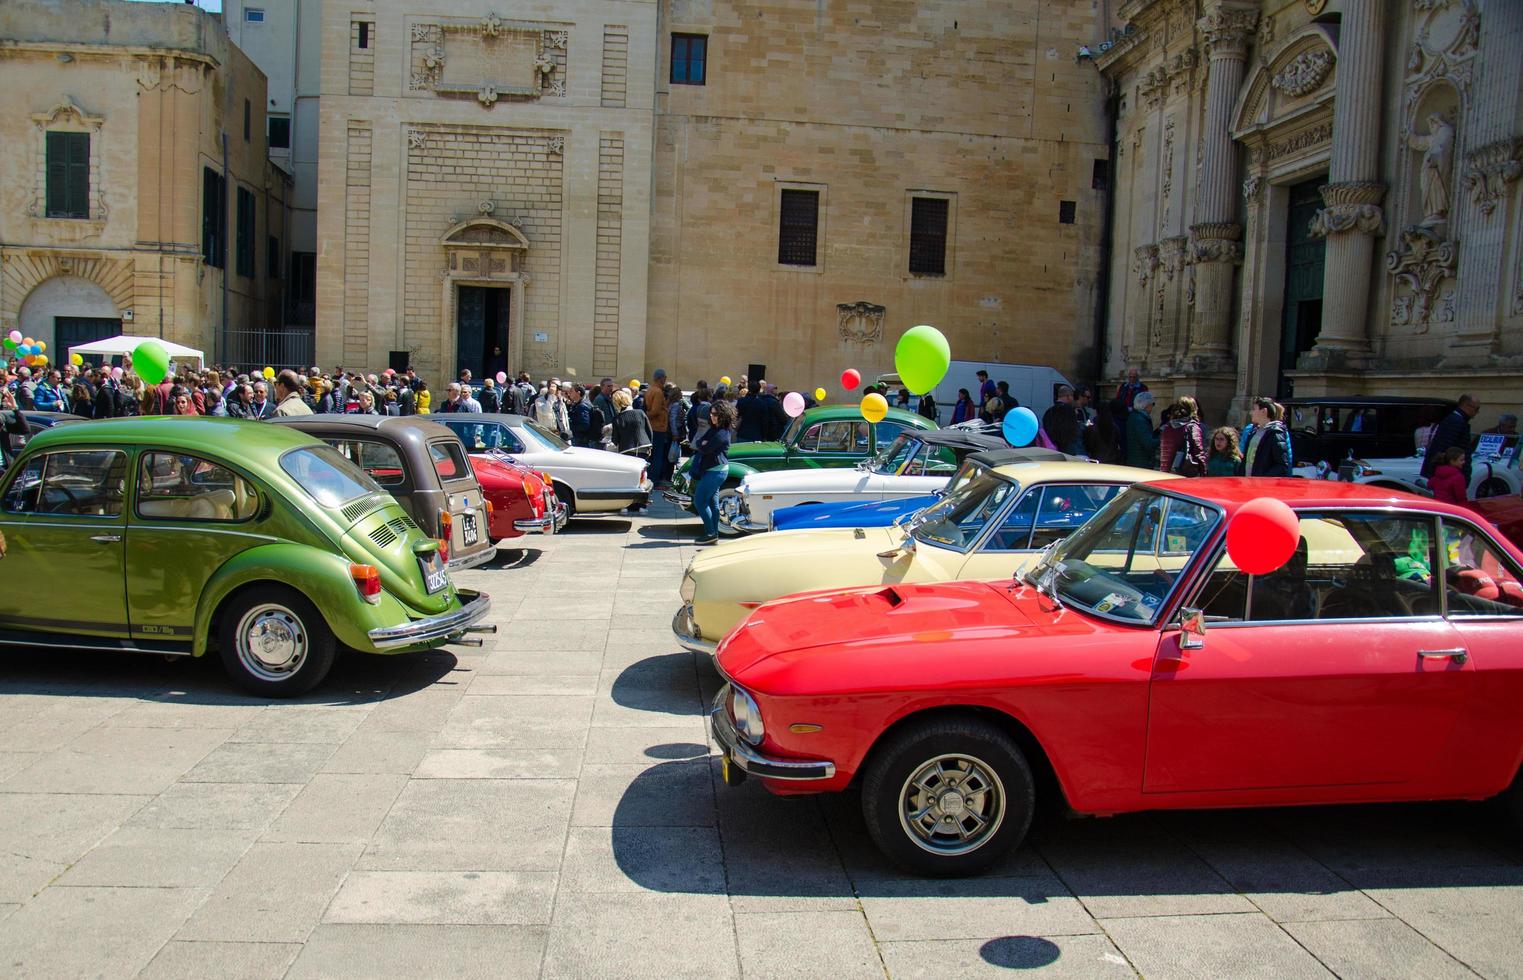 lecce, italien - 23. april 2017 vintage classic retro automobile cars in italien foto